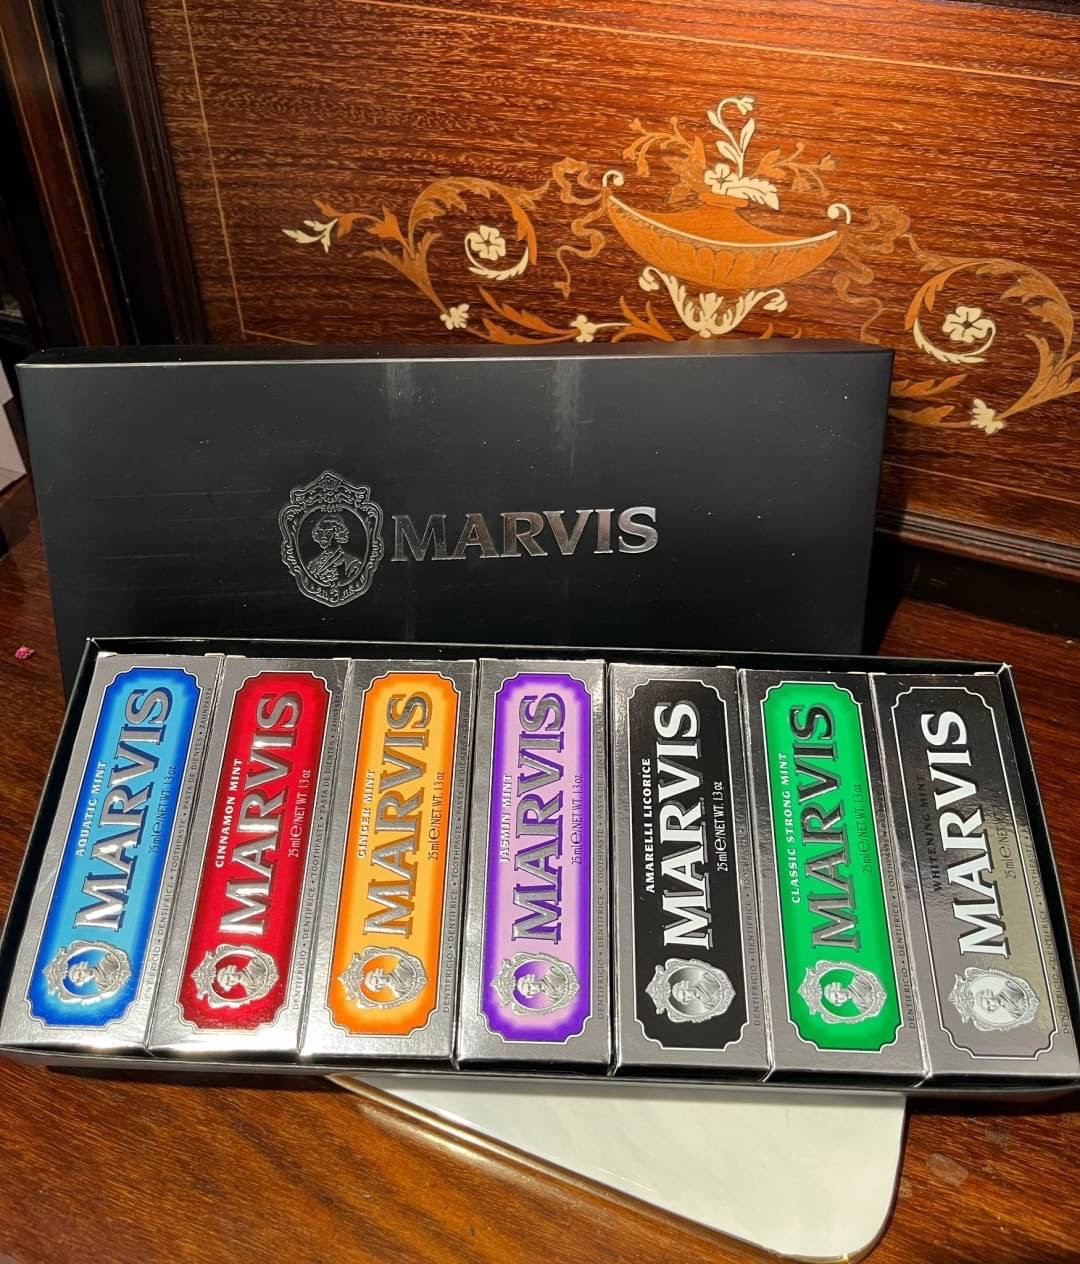 MARVIS 牙膏 25ML旅行7件組禮盒